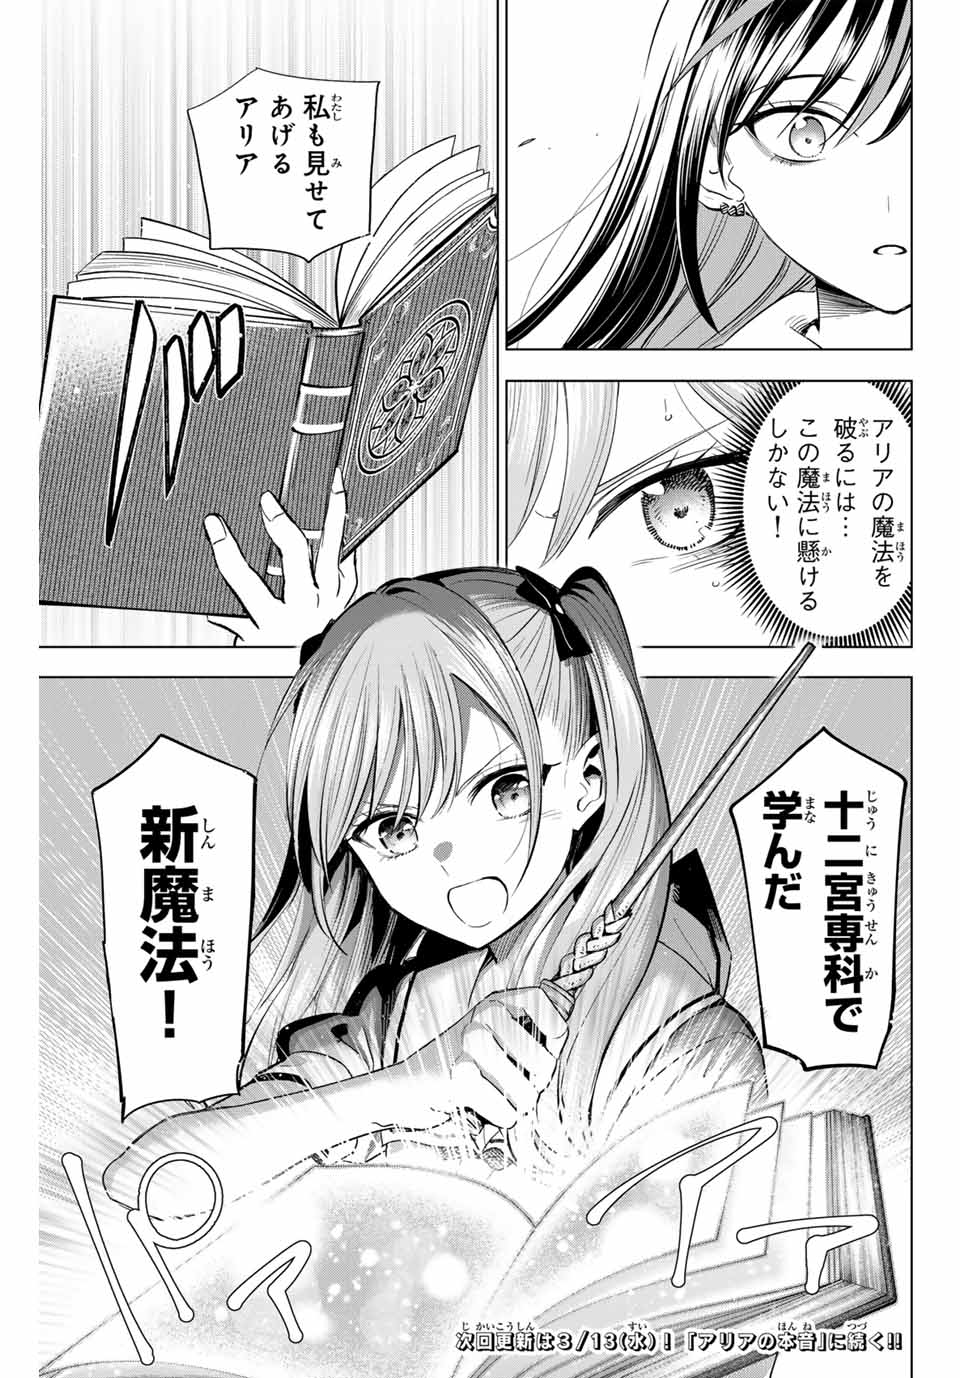 Kuroneko to Majo no Kyoushitsu - Chapter 54 - Page 21